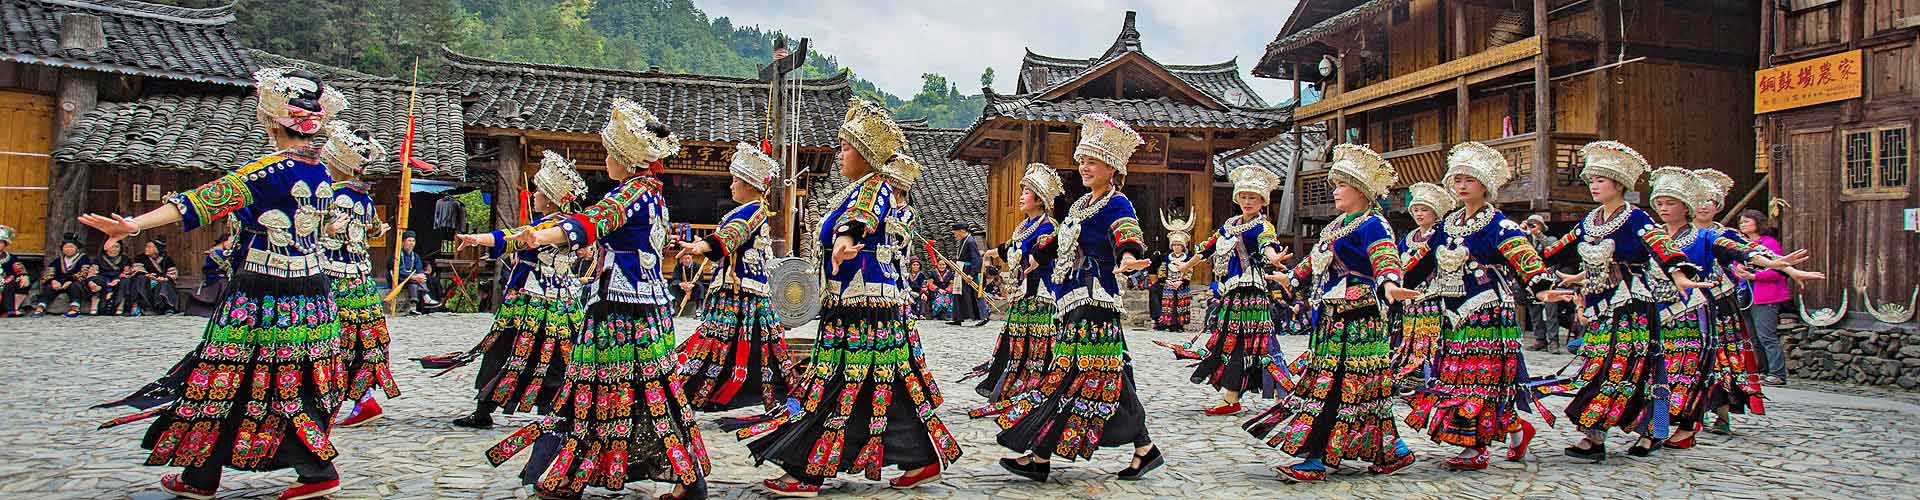 Dancing show in Guizhou